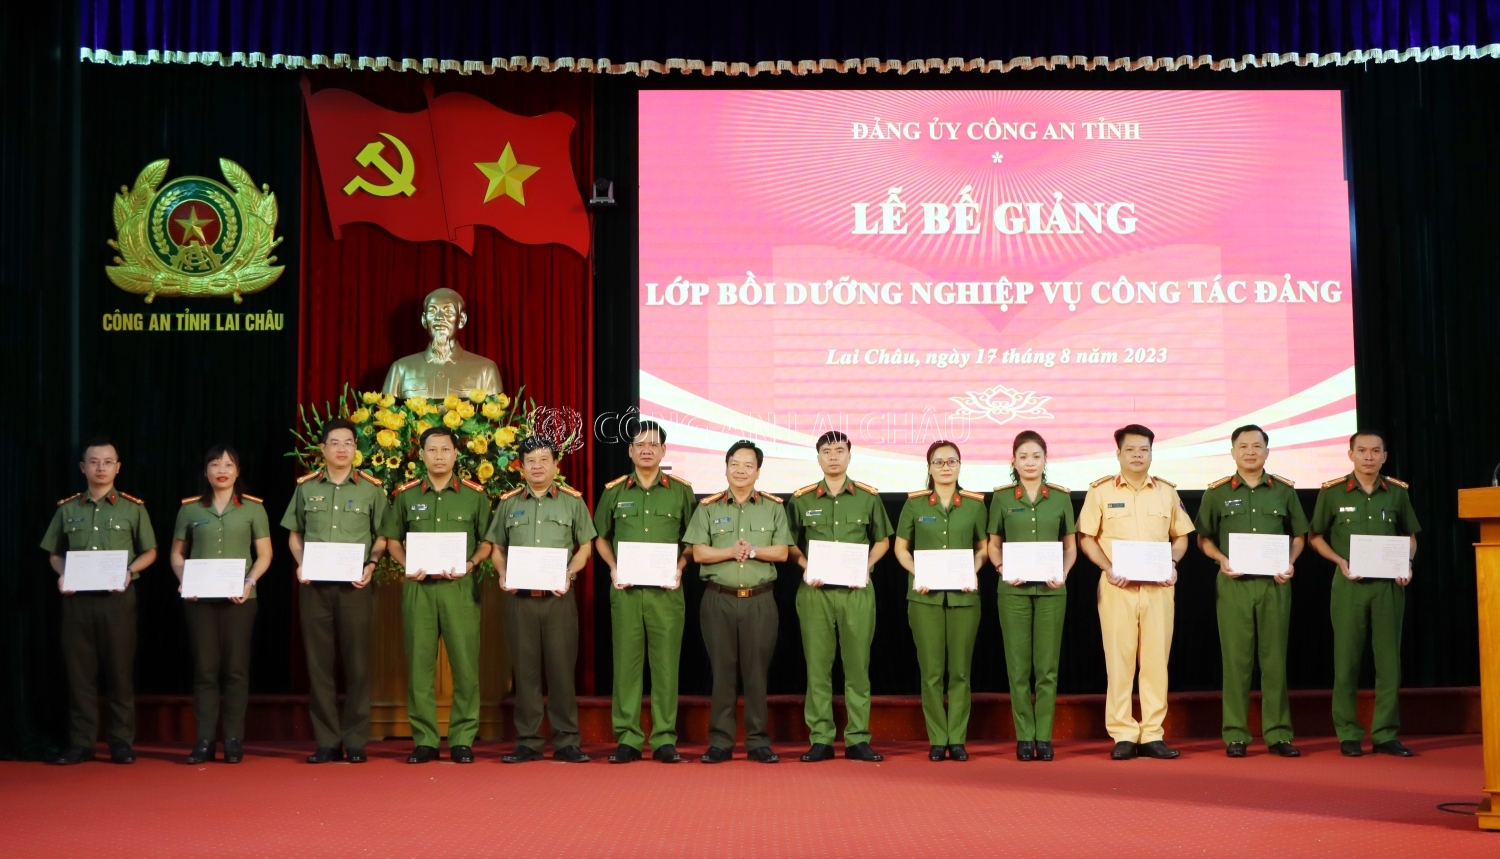 Đại tá Sùng A Súa - Phó Bí thư Đảng ủy, Phó giám đốc Công an tỉnh trao chứng chí các học viên